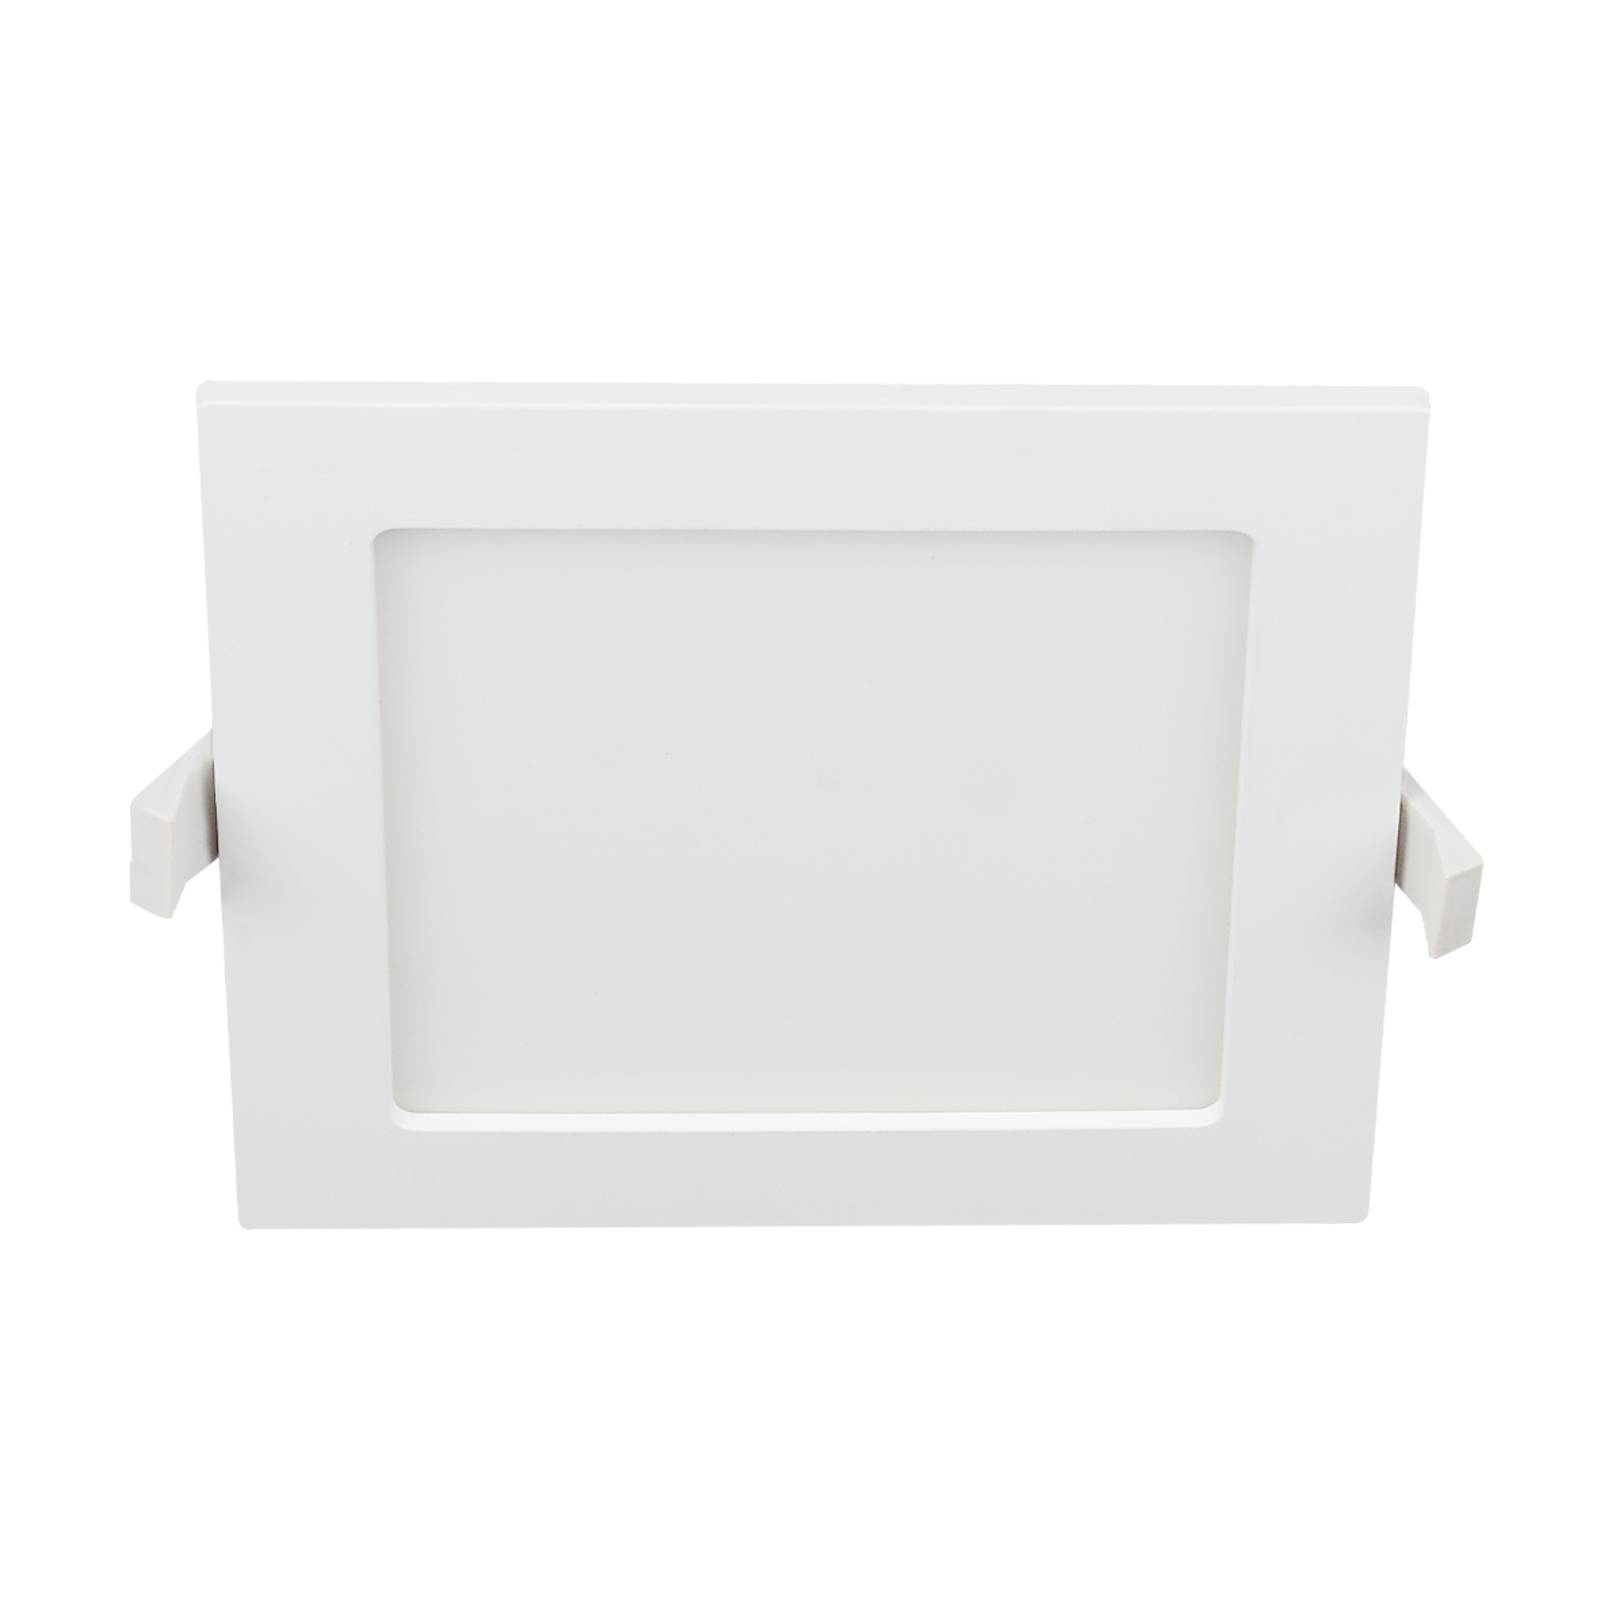 Prios Helina LED-Einbaulampe, weiß, 22 cm, 24 W